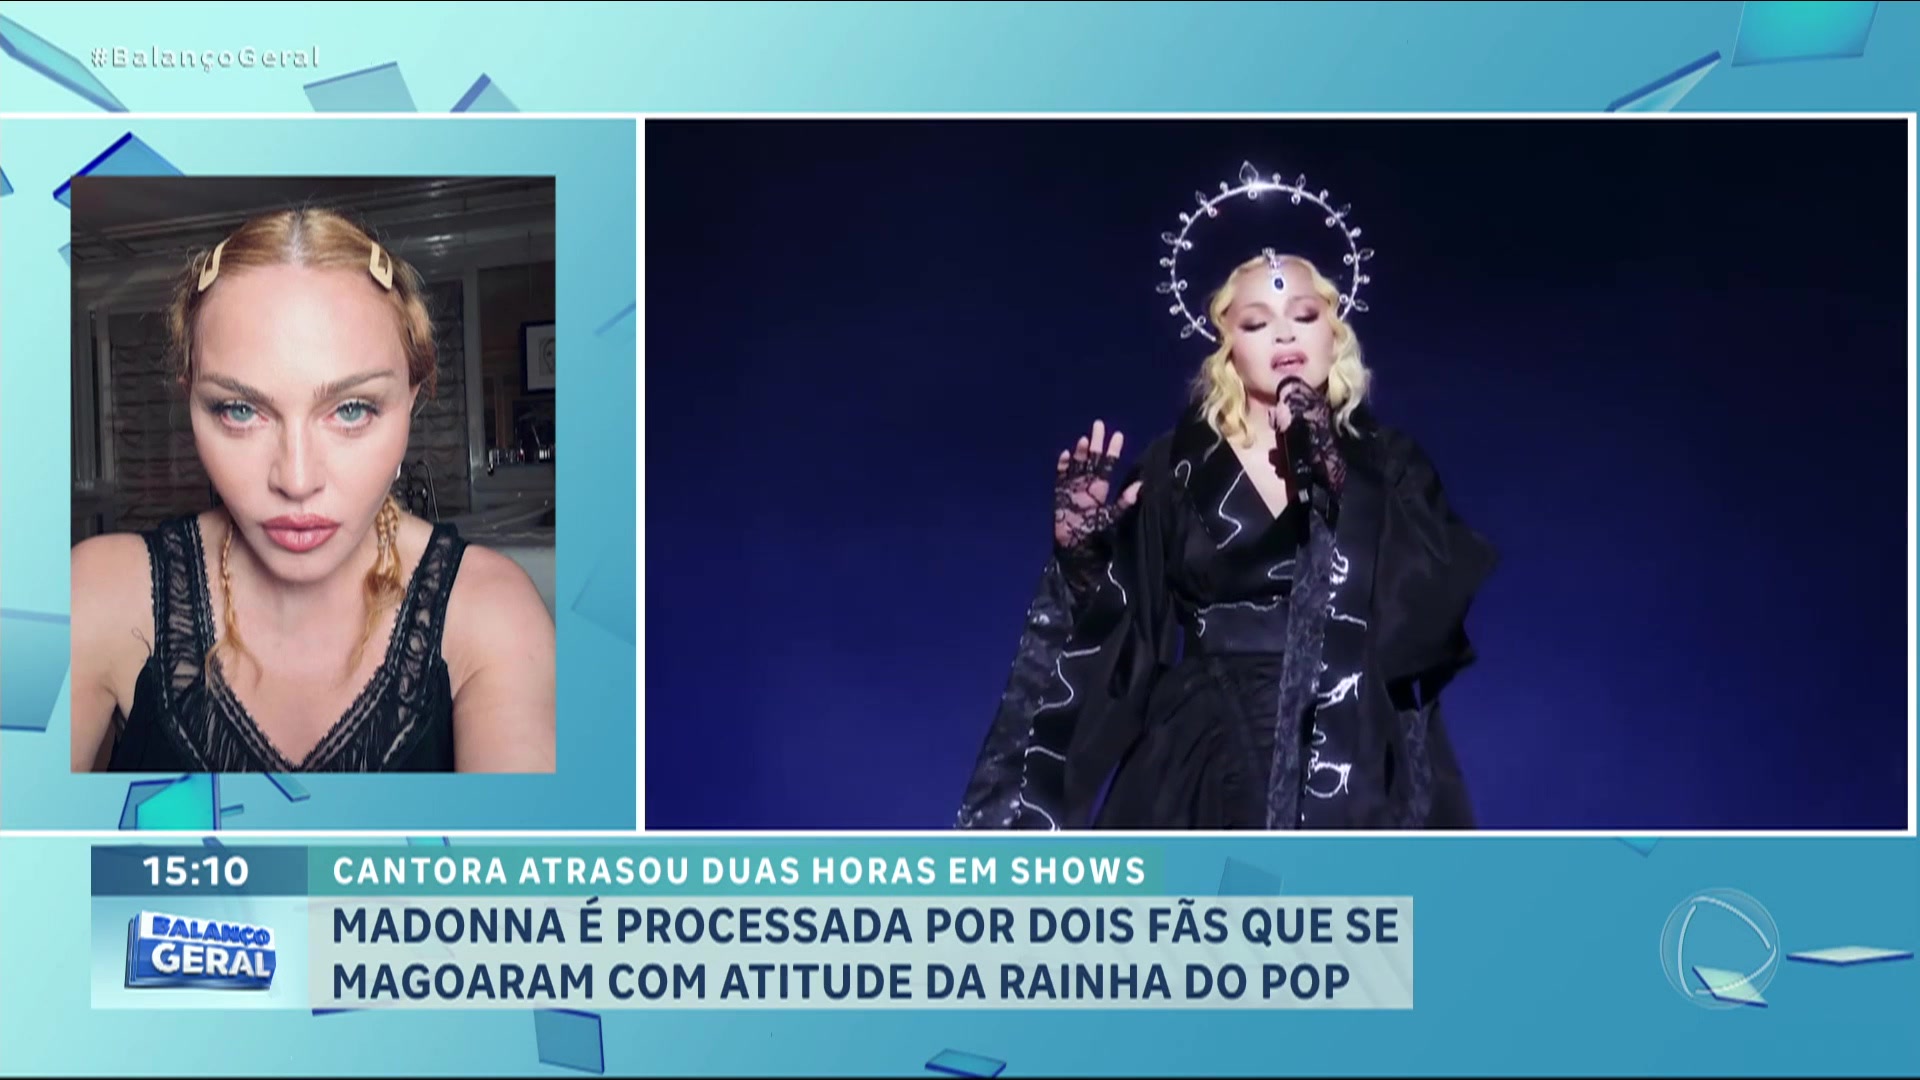 Vídeo: Dois fãs processam Madonna por atraso de duas horas em show de Nova York